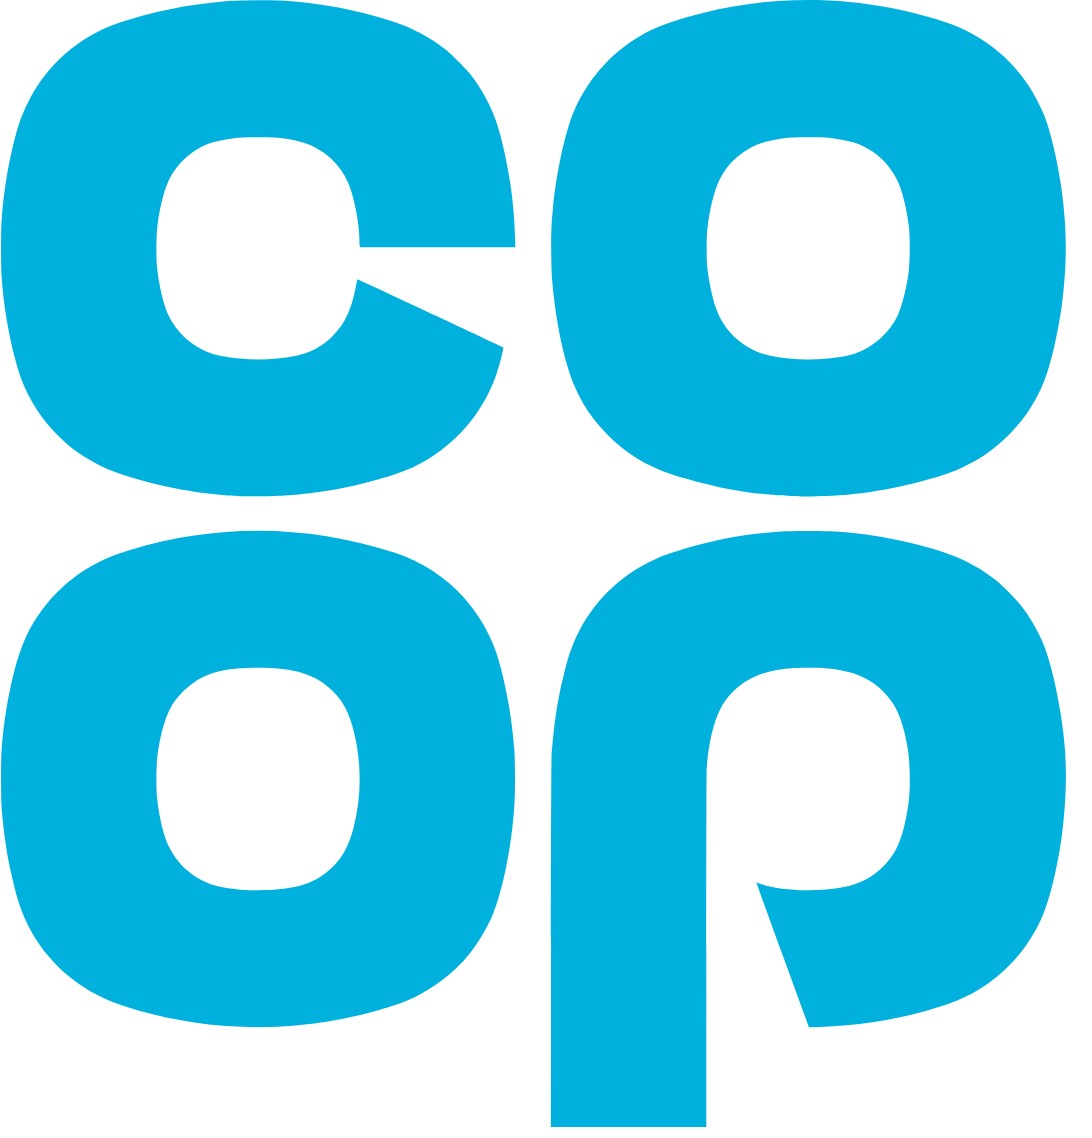 co-op funeralcare logo 